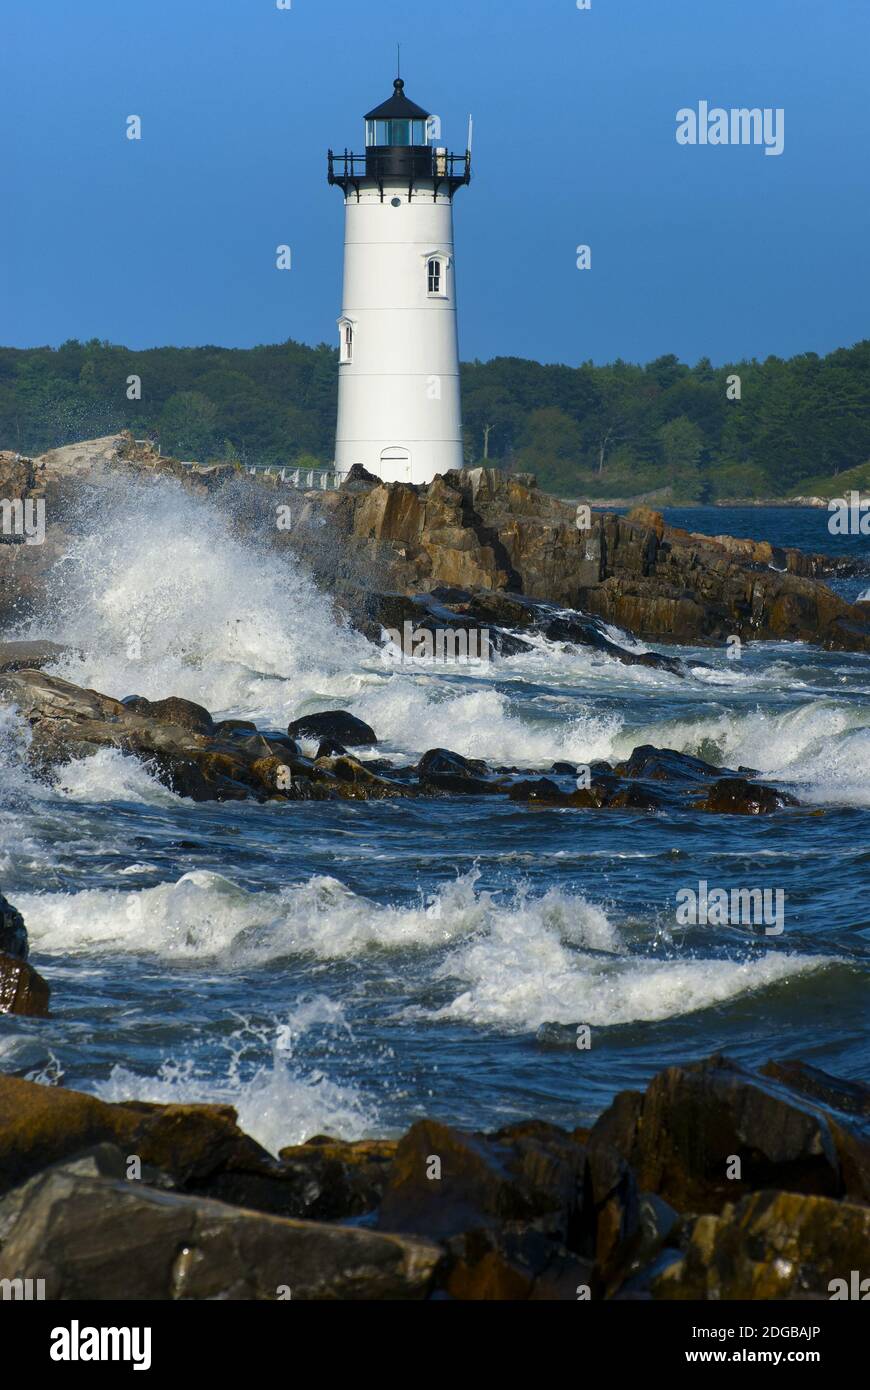 An einem sonnigen Tag in New England stürmen große Wellen am Leuchtturm von Portsmouth Harbour an der New Hampshire Seacoast. Stockfoto